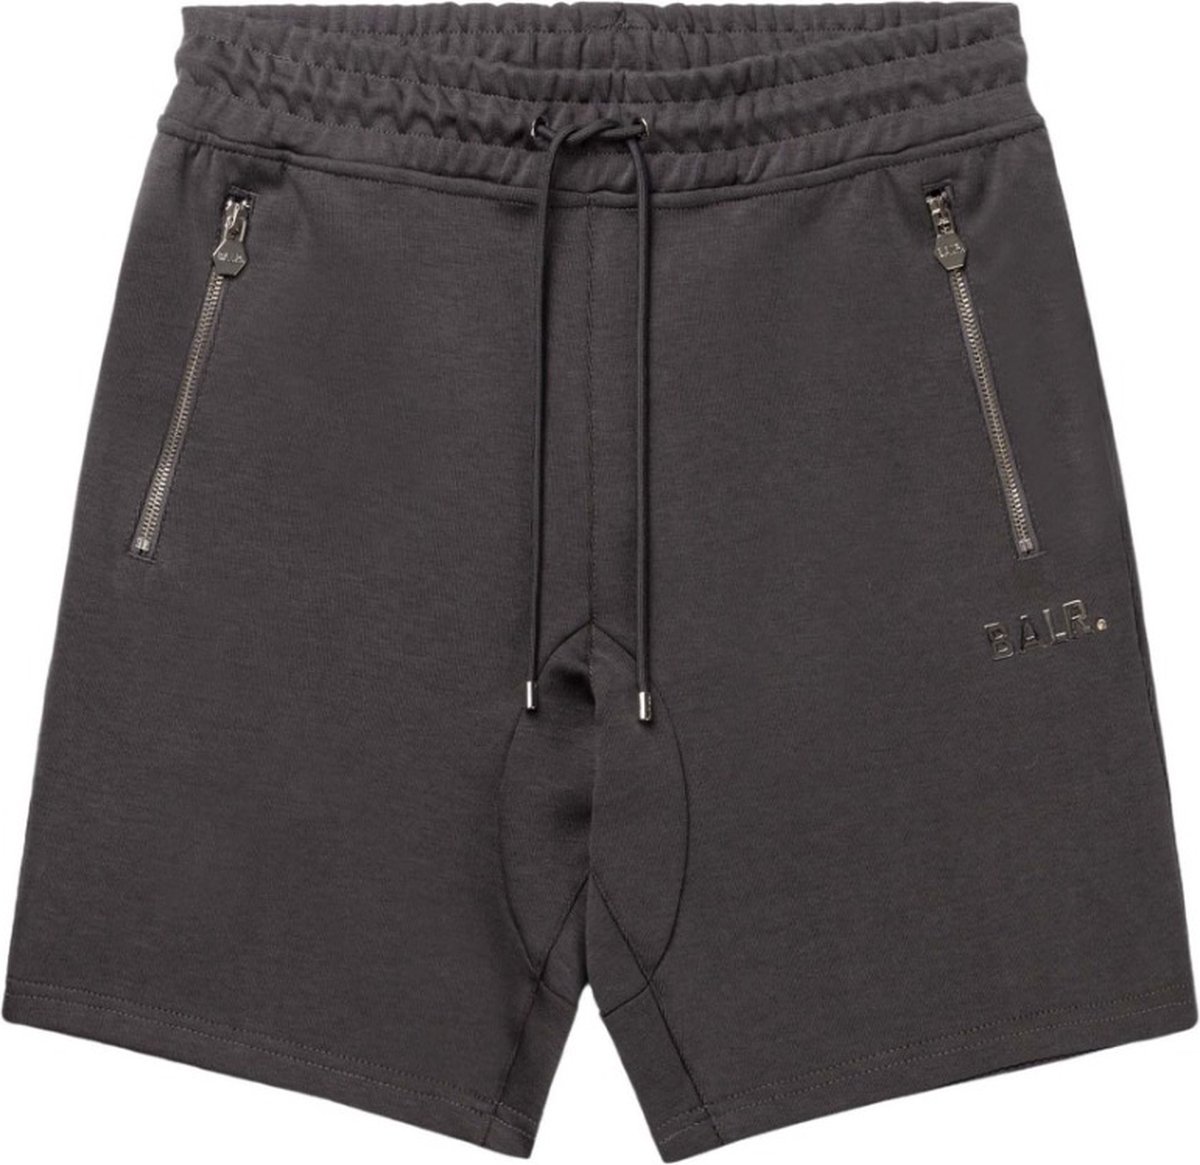 BALR. Broek Grijs Katoen maat XL Q-series sweat shorts grijs